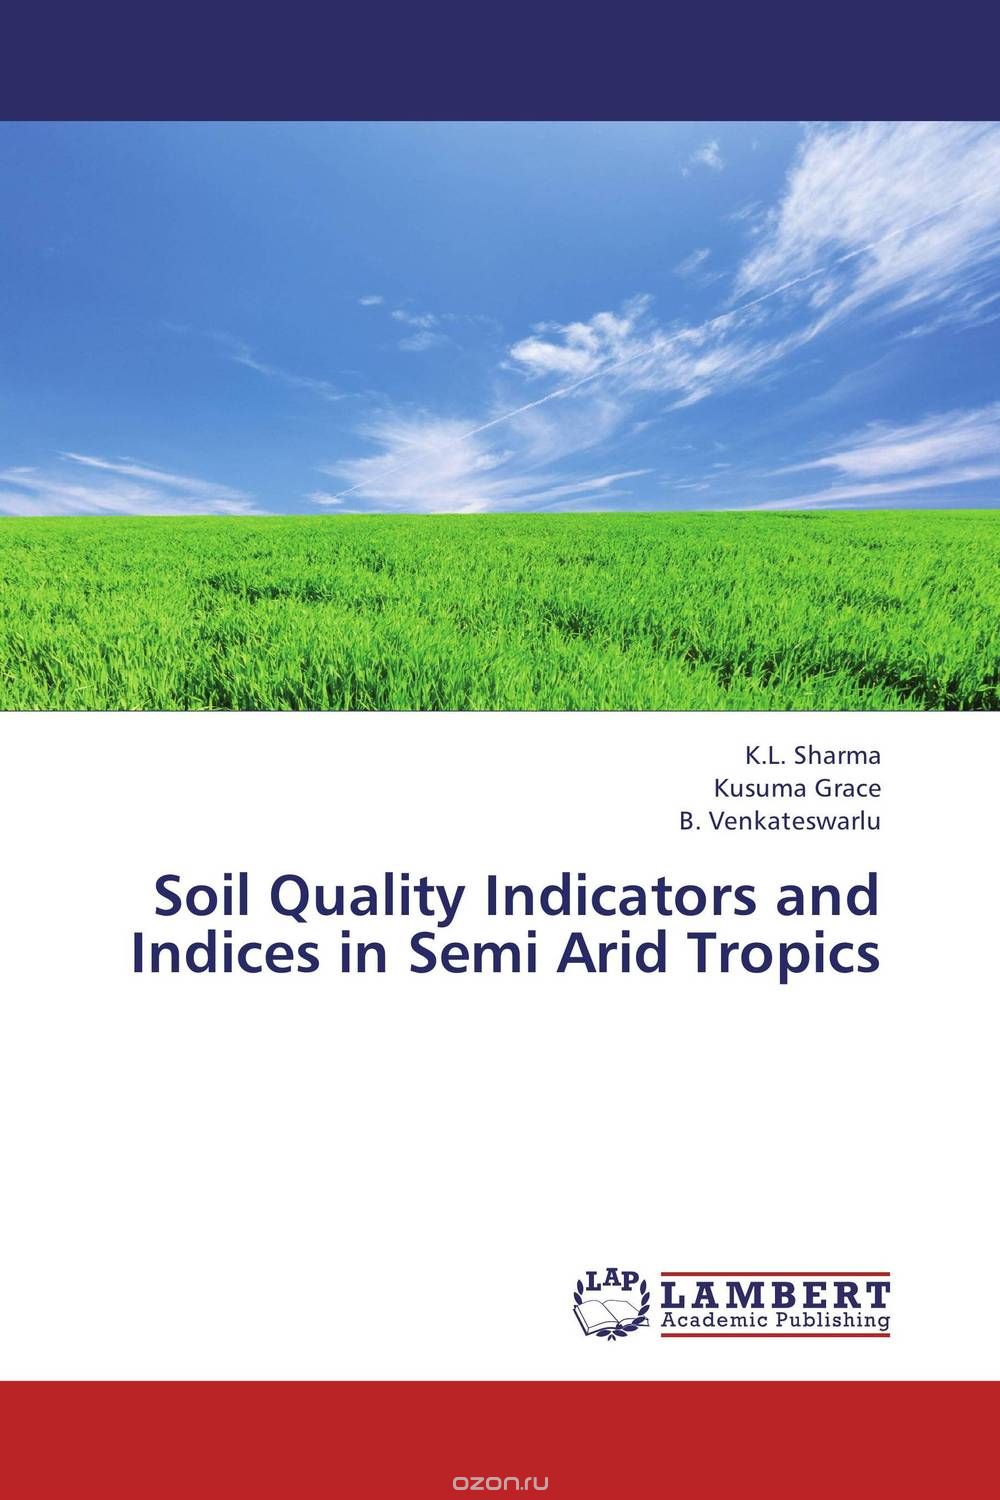 Скачать книгу "Soil Quality Indicators and Indices in Semi Arid Tropics"